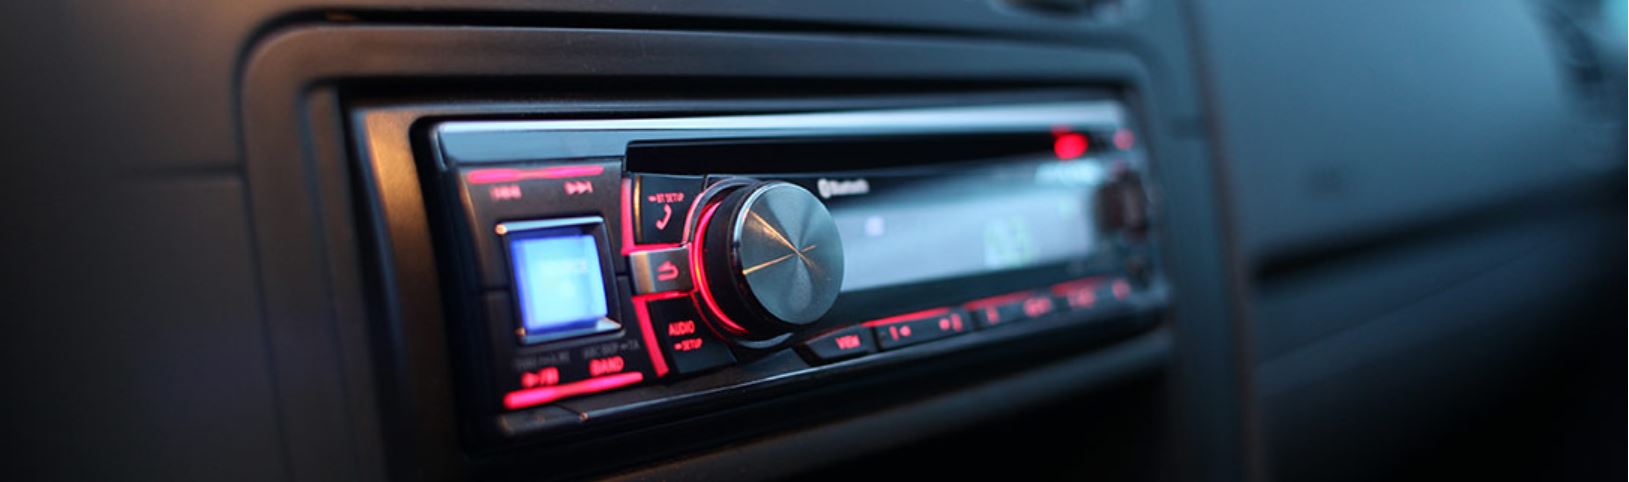 Las mejores radios para el coche. Las mejores autorradios para tu coche